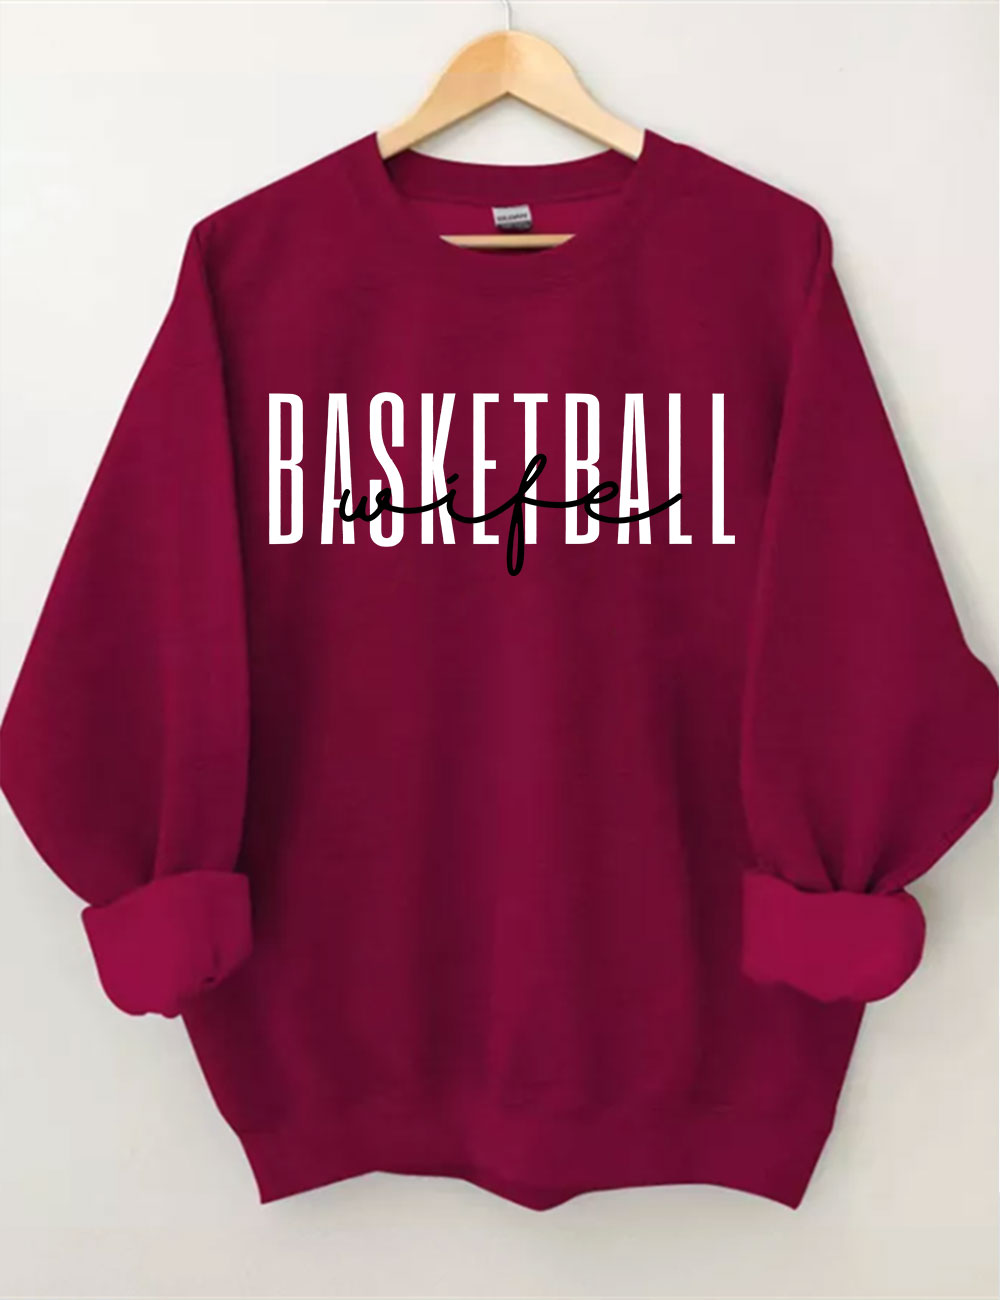 Basketball Wife Sweatshirt